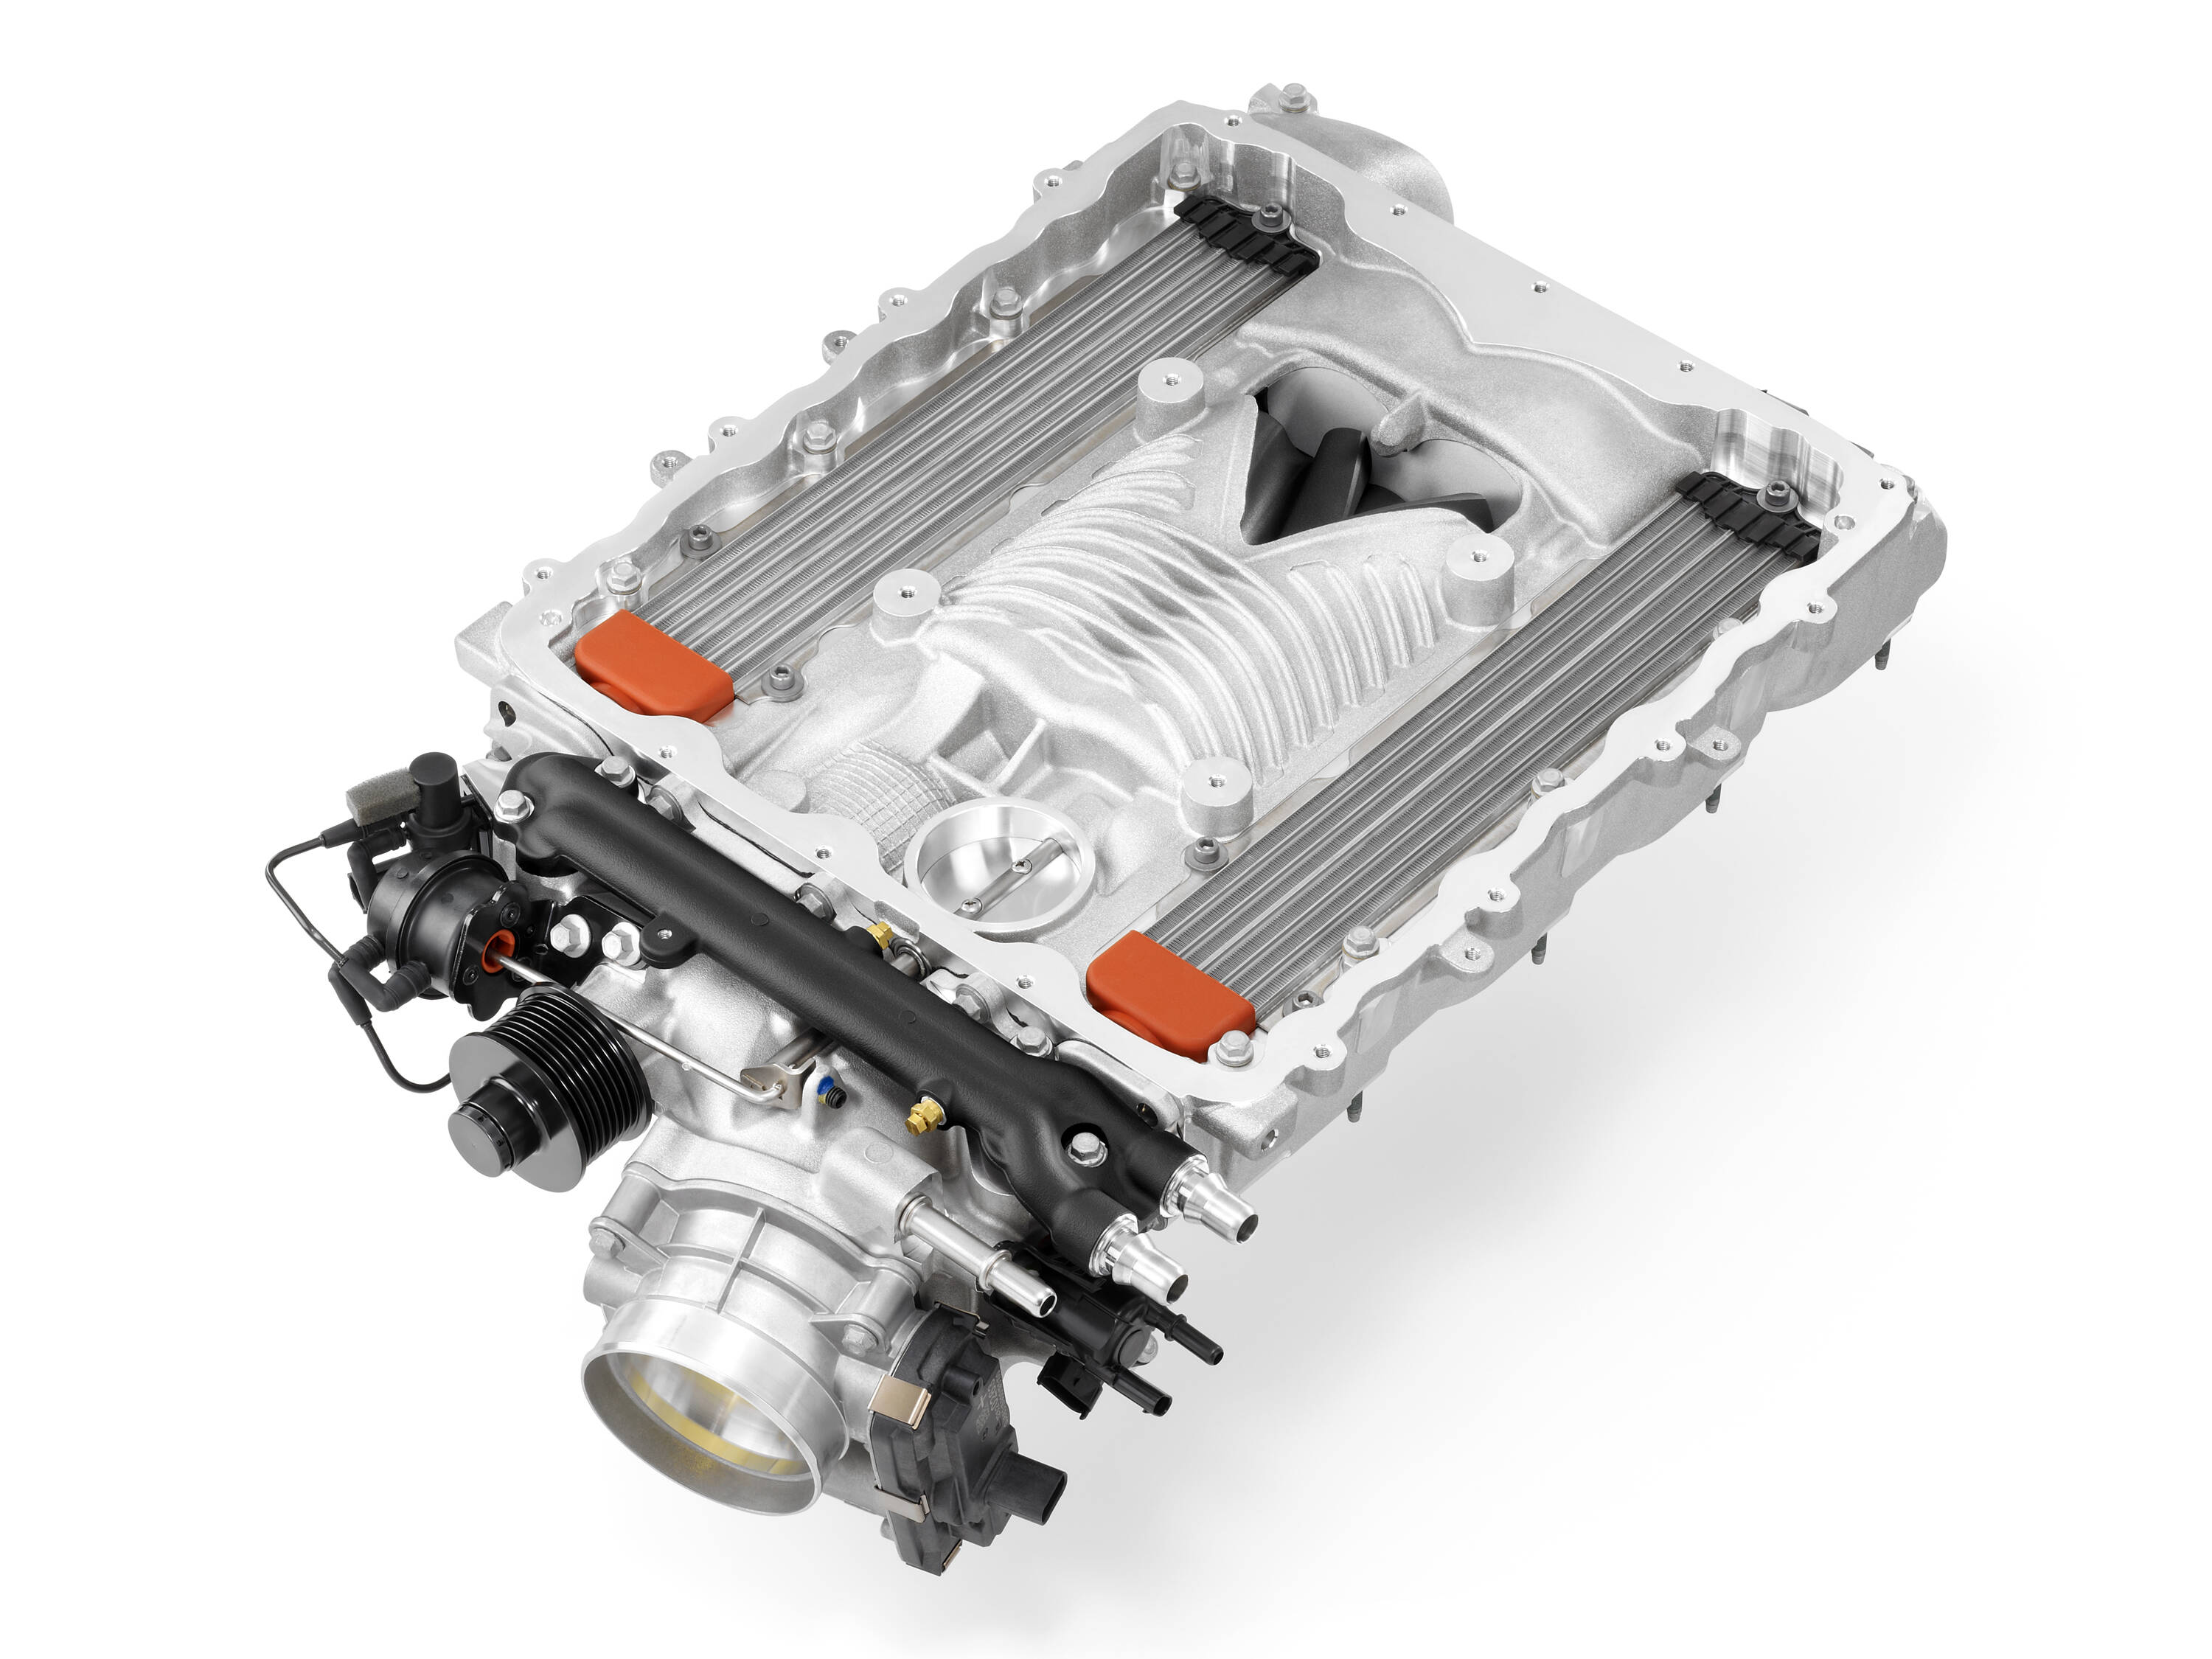 2015-GM-V8LT4-Supercharger-002.jpg